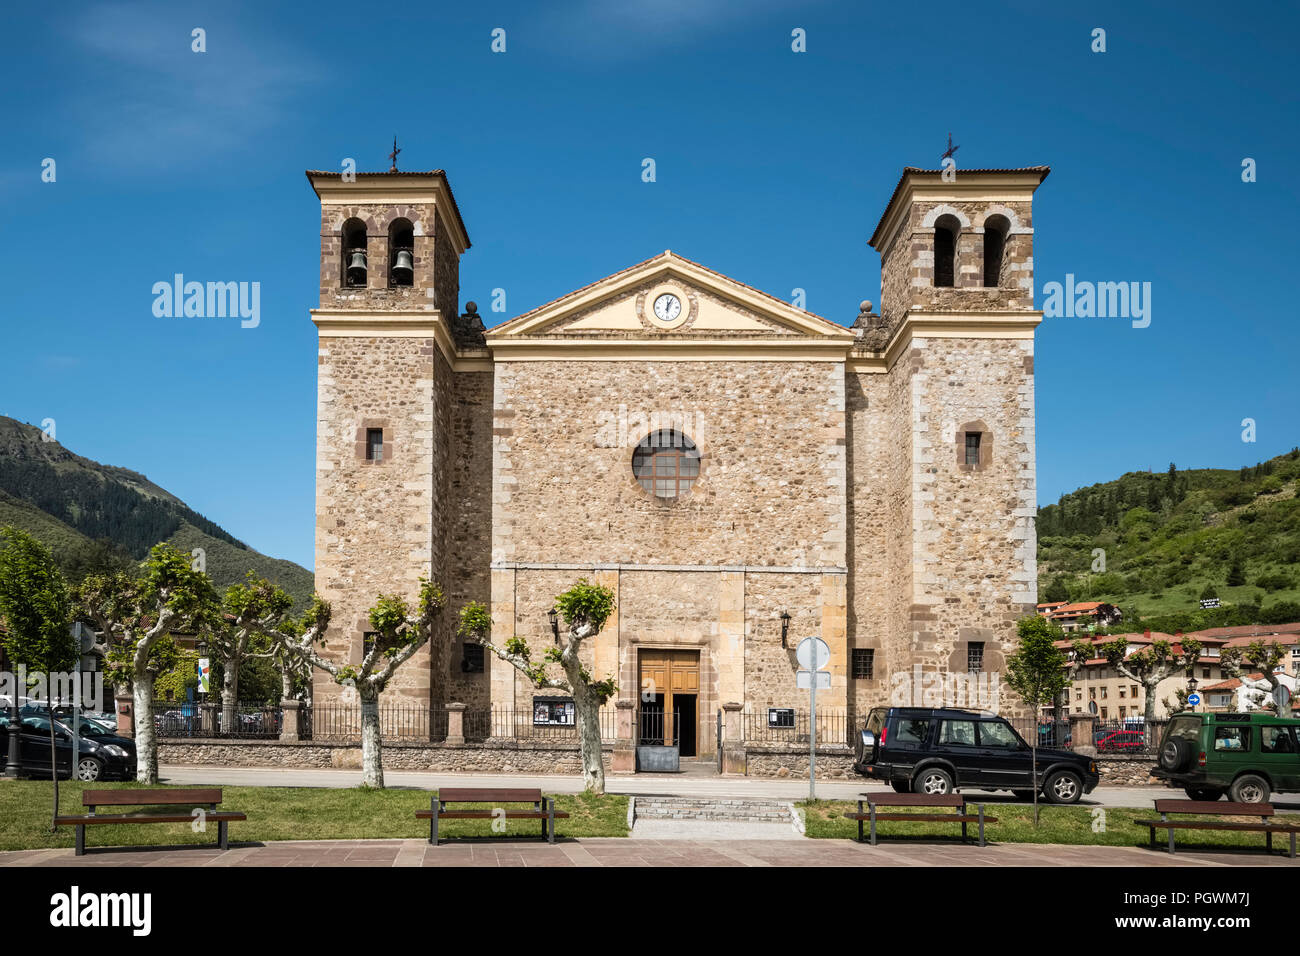 Iglesia nueva de San Vicente church, Potes, Picos de Europa, Cantabria, Spain Stock Photo